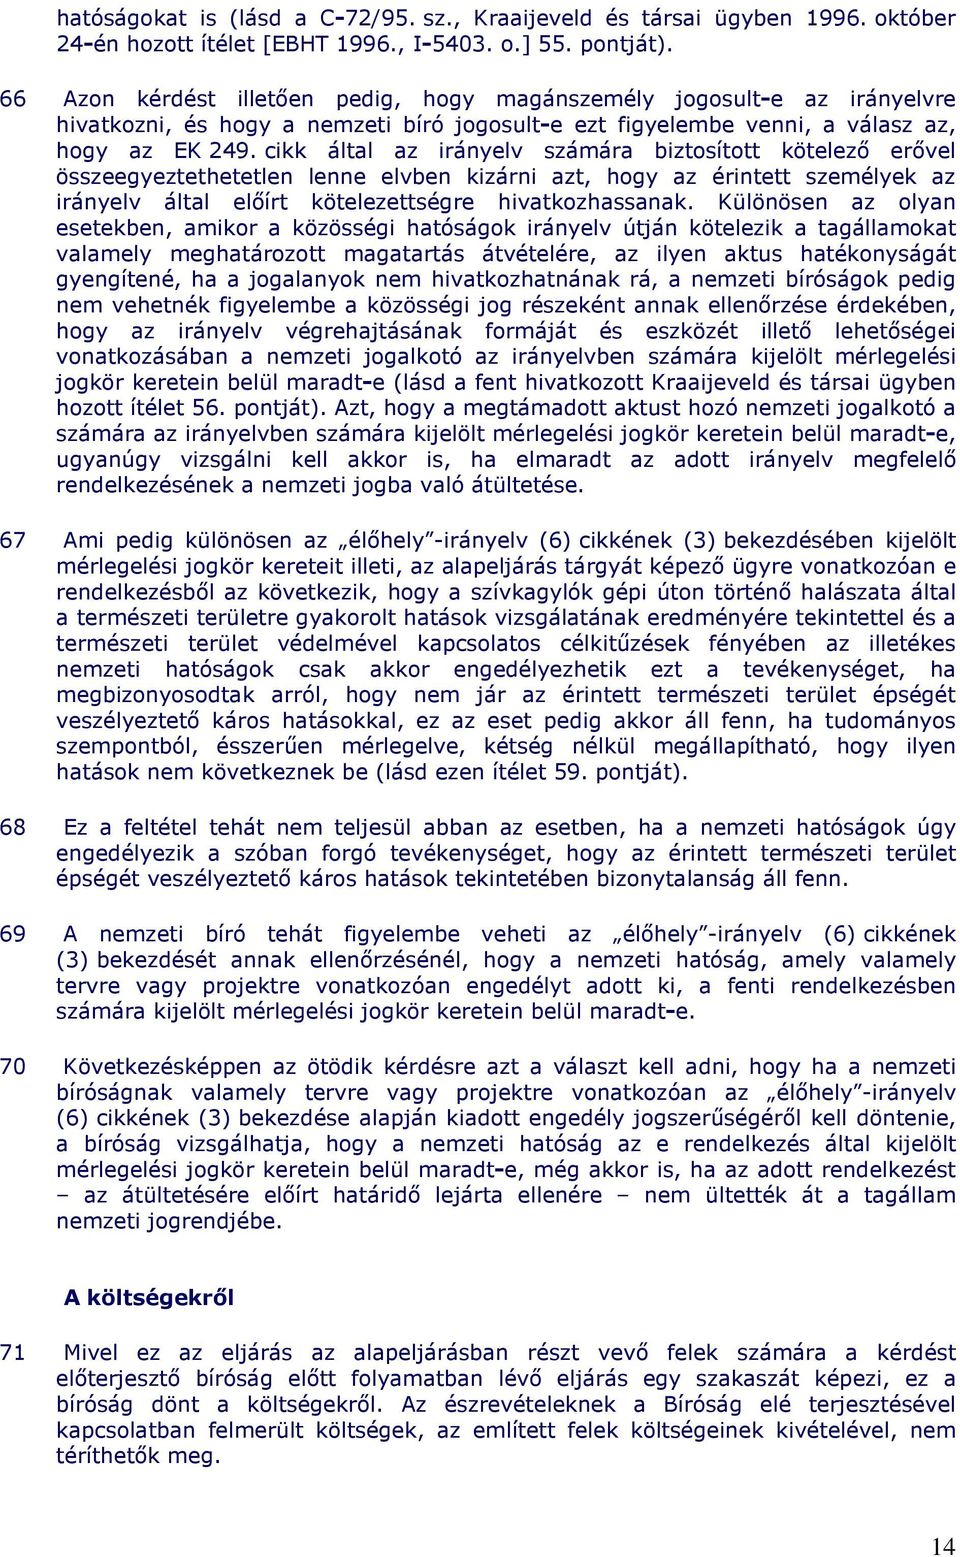 cikk által az irányelv számára biztosított kötelezı erıvel összeegyeztethetetlen lenne elvben kizárni azt, hogy az érintett személyek az irányelv által elıírt kötelezettségre hivatkozhassanak.